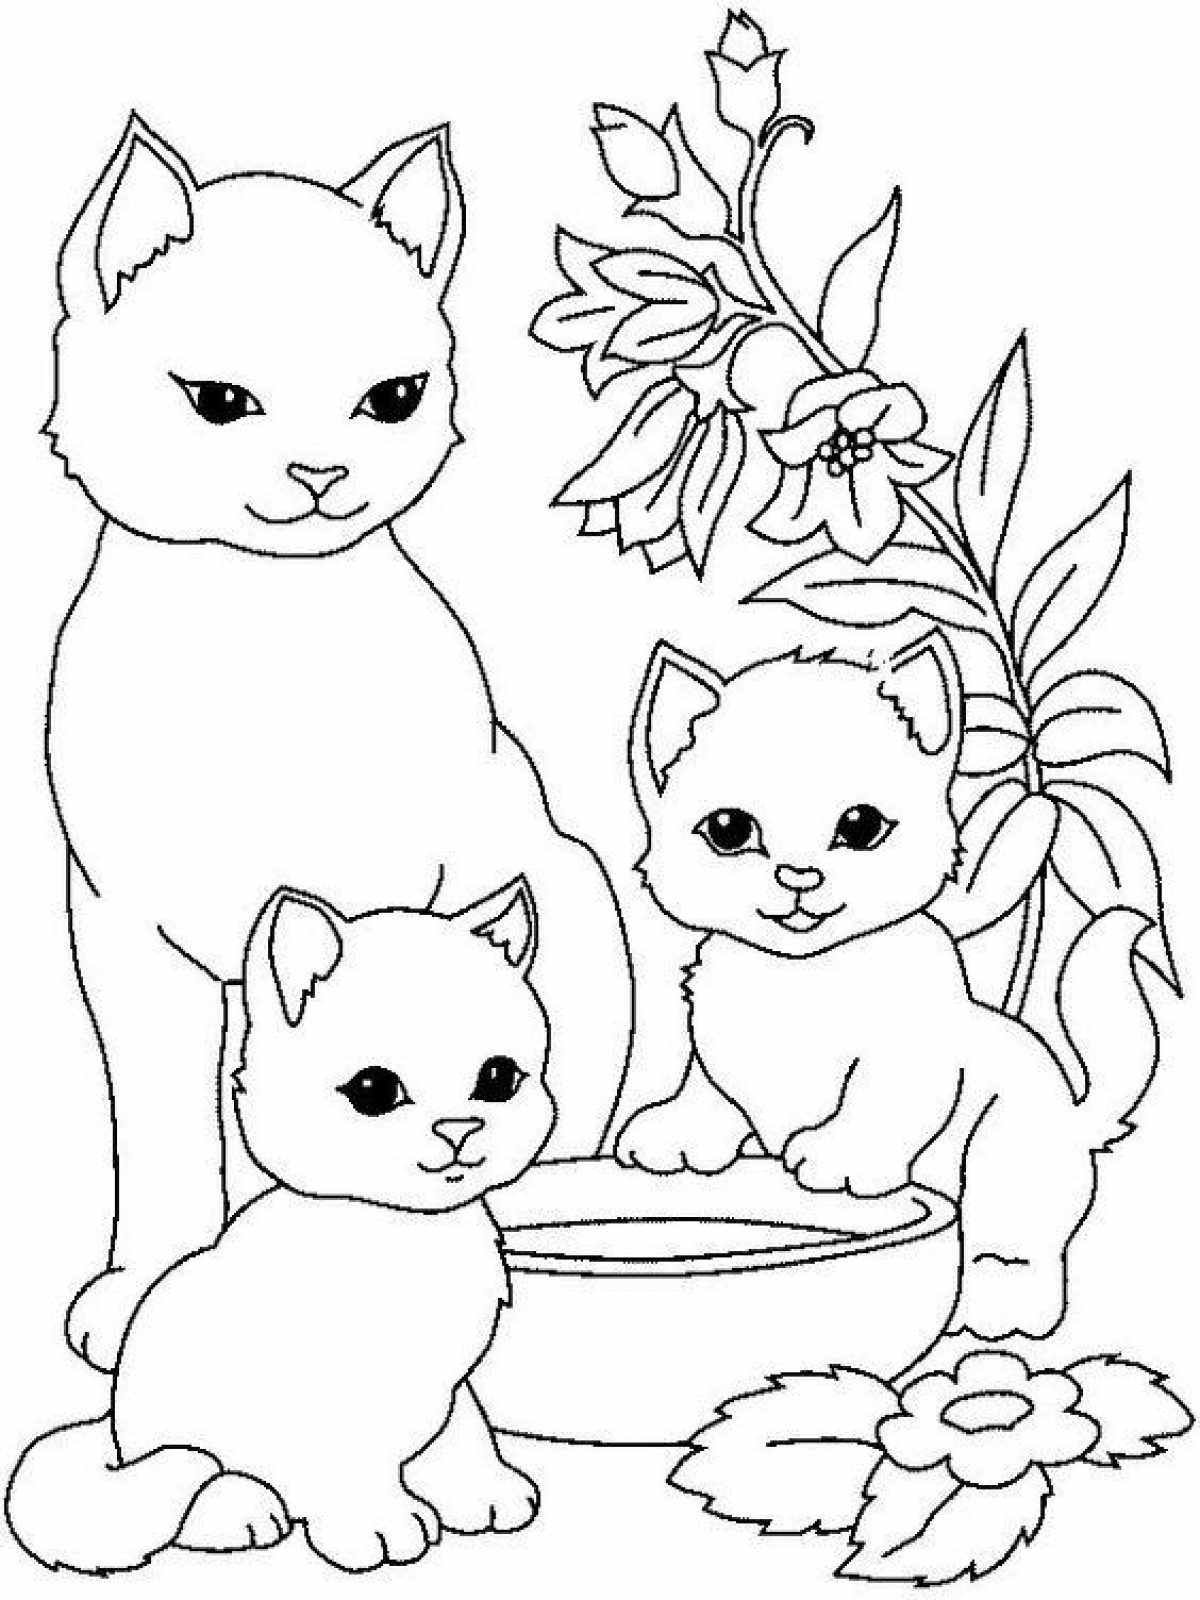 Раскраски кота, кошки, котят